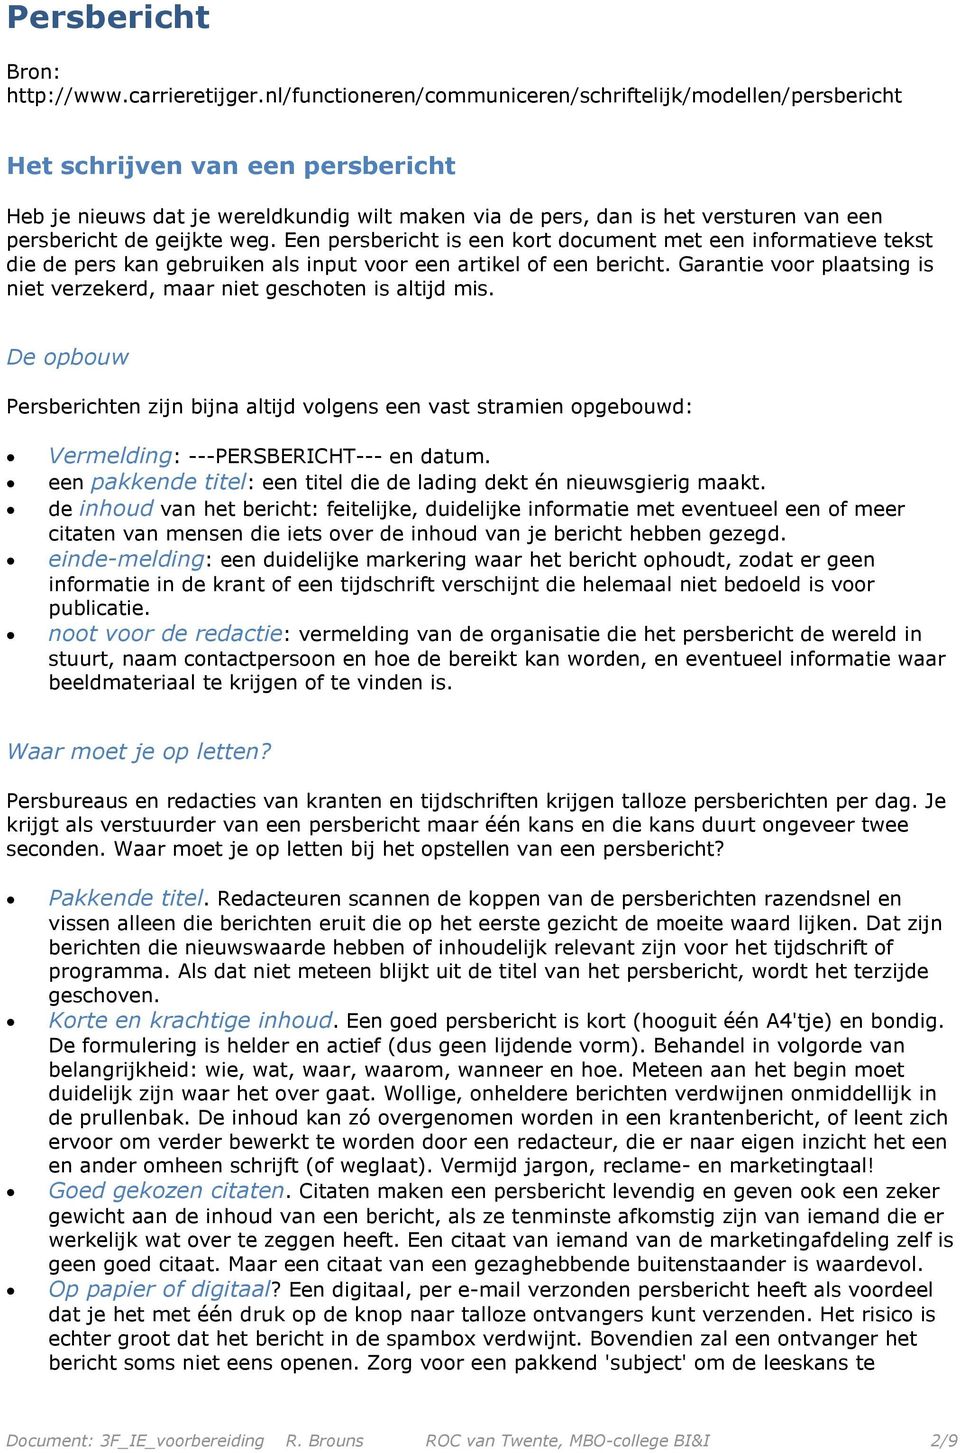 Voorbereiding Instellingsexamen Nederlands Het Schrijven Van Een Persbericht Advertentie En Betoog Pdf Free Download